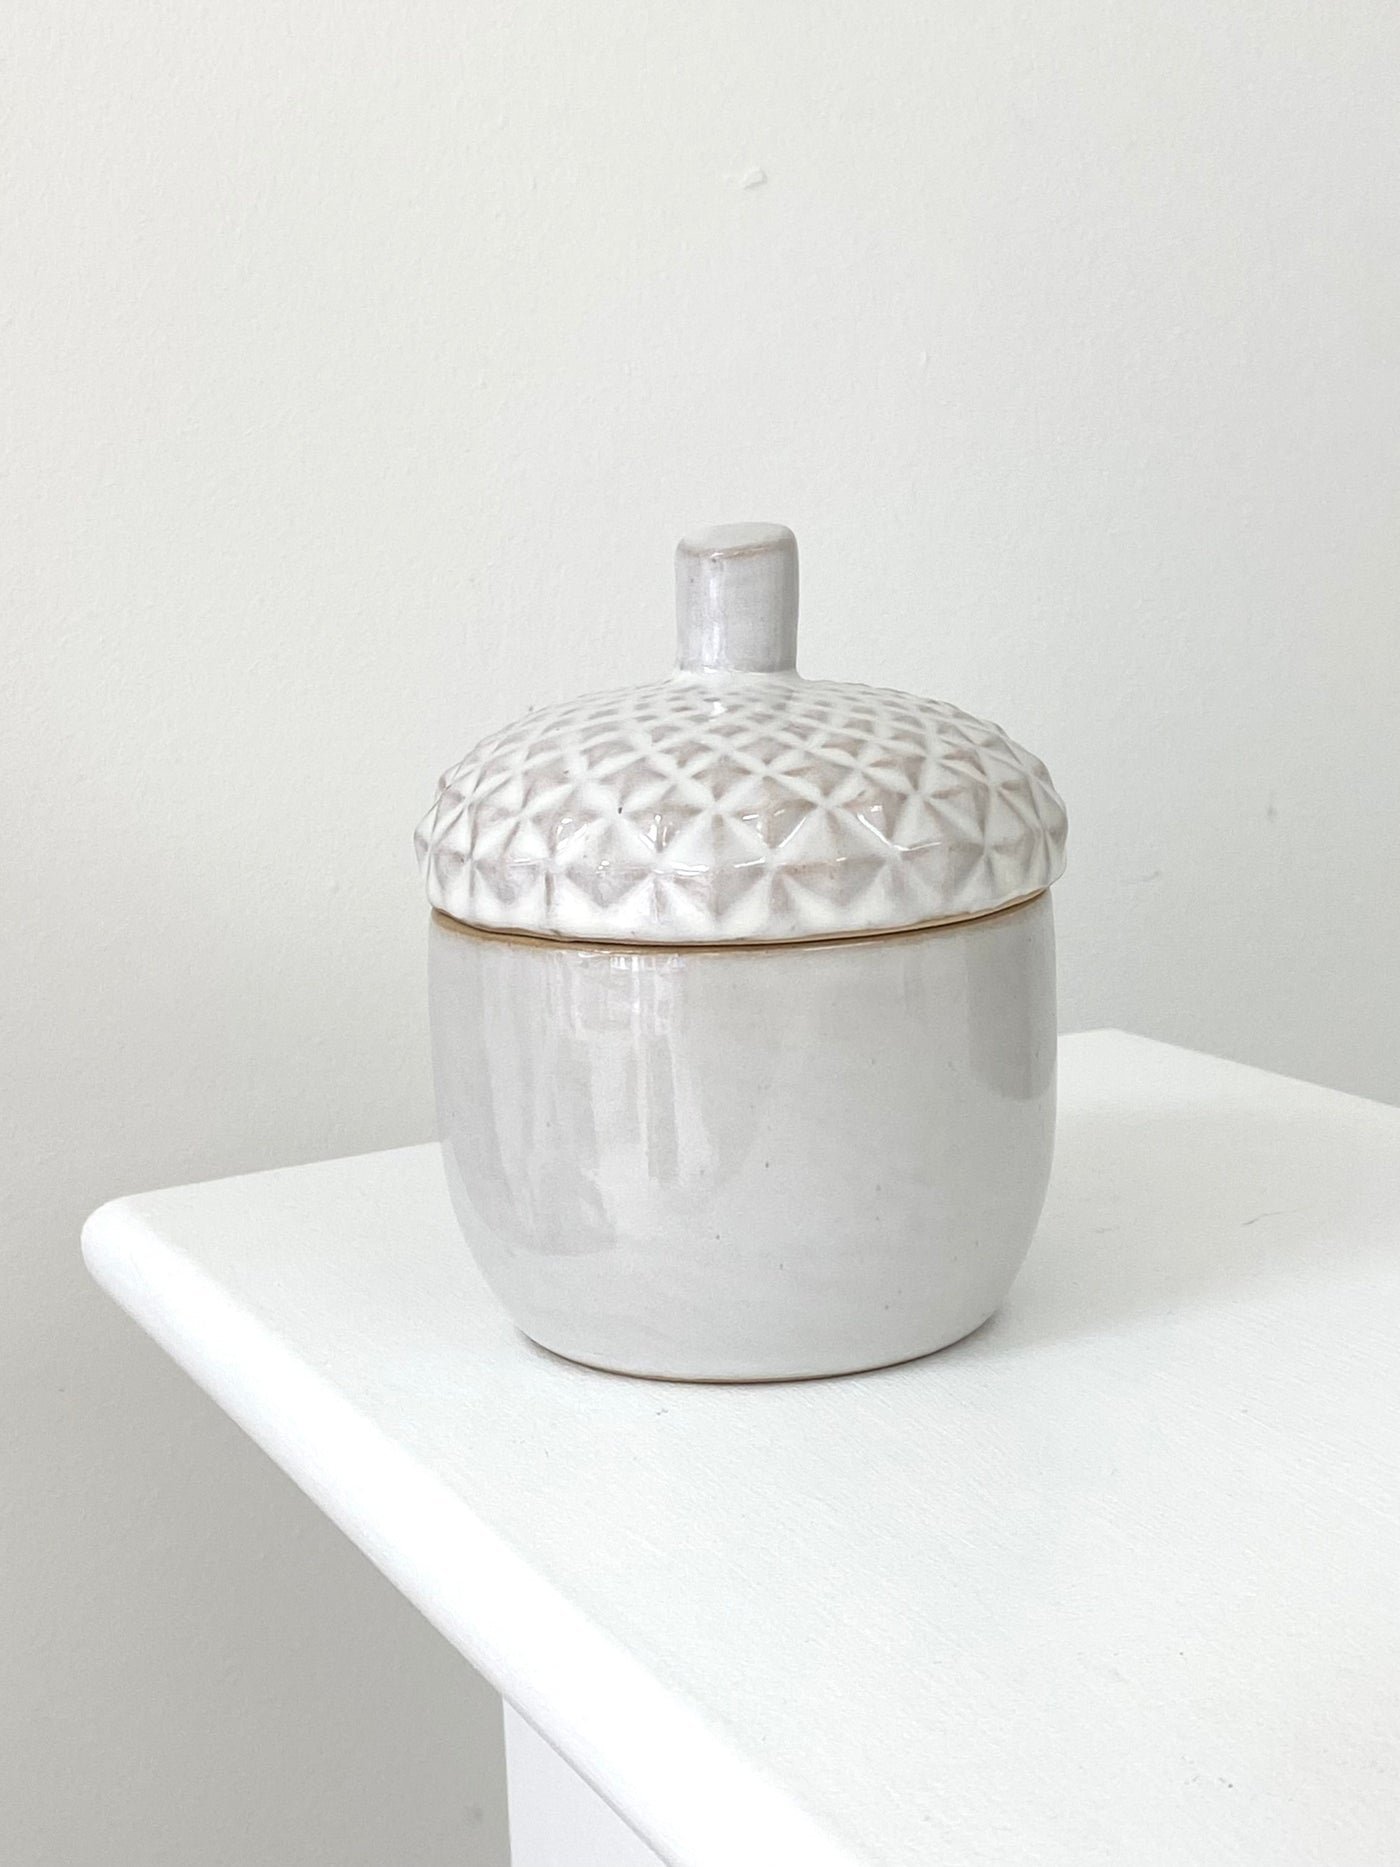 Ceramic Acorn Storage Pot - Large